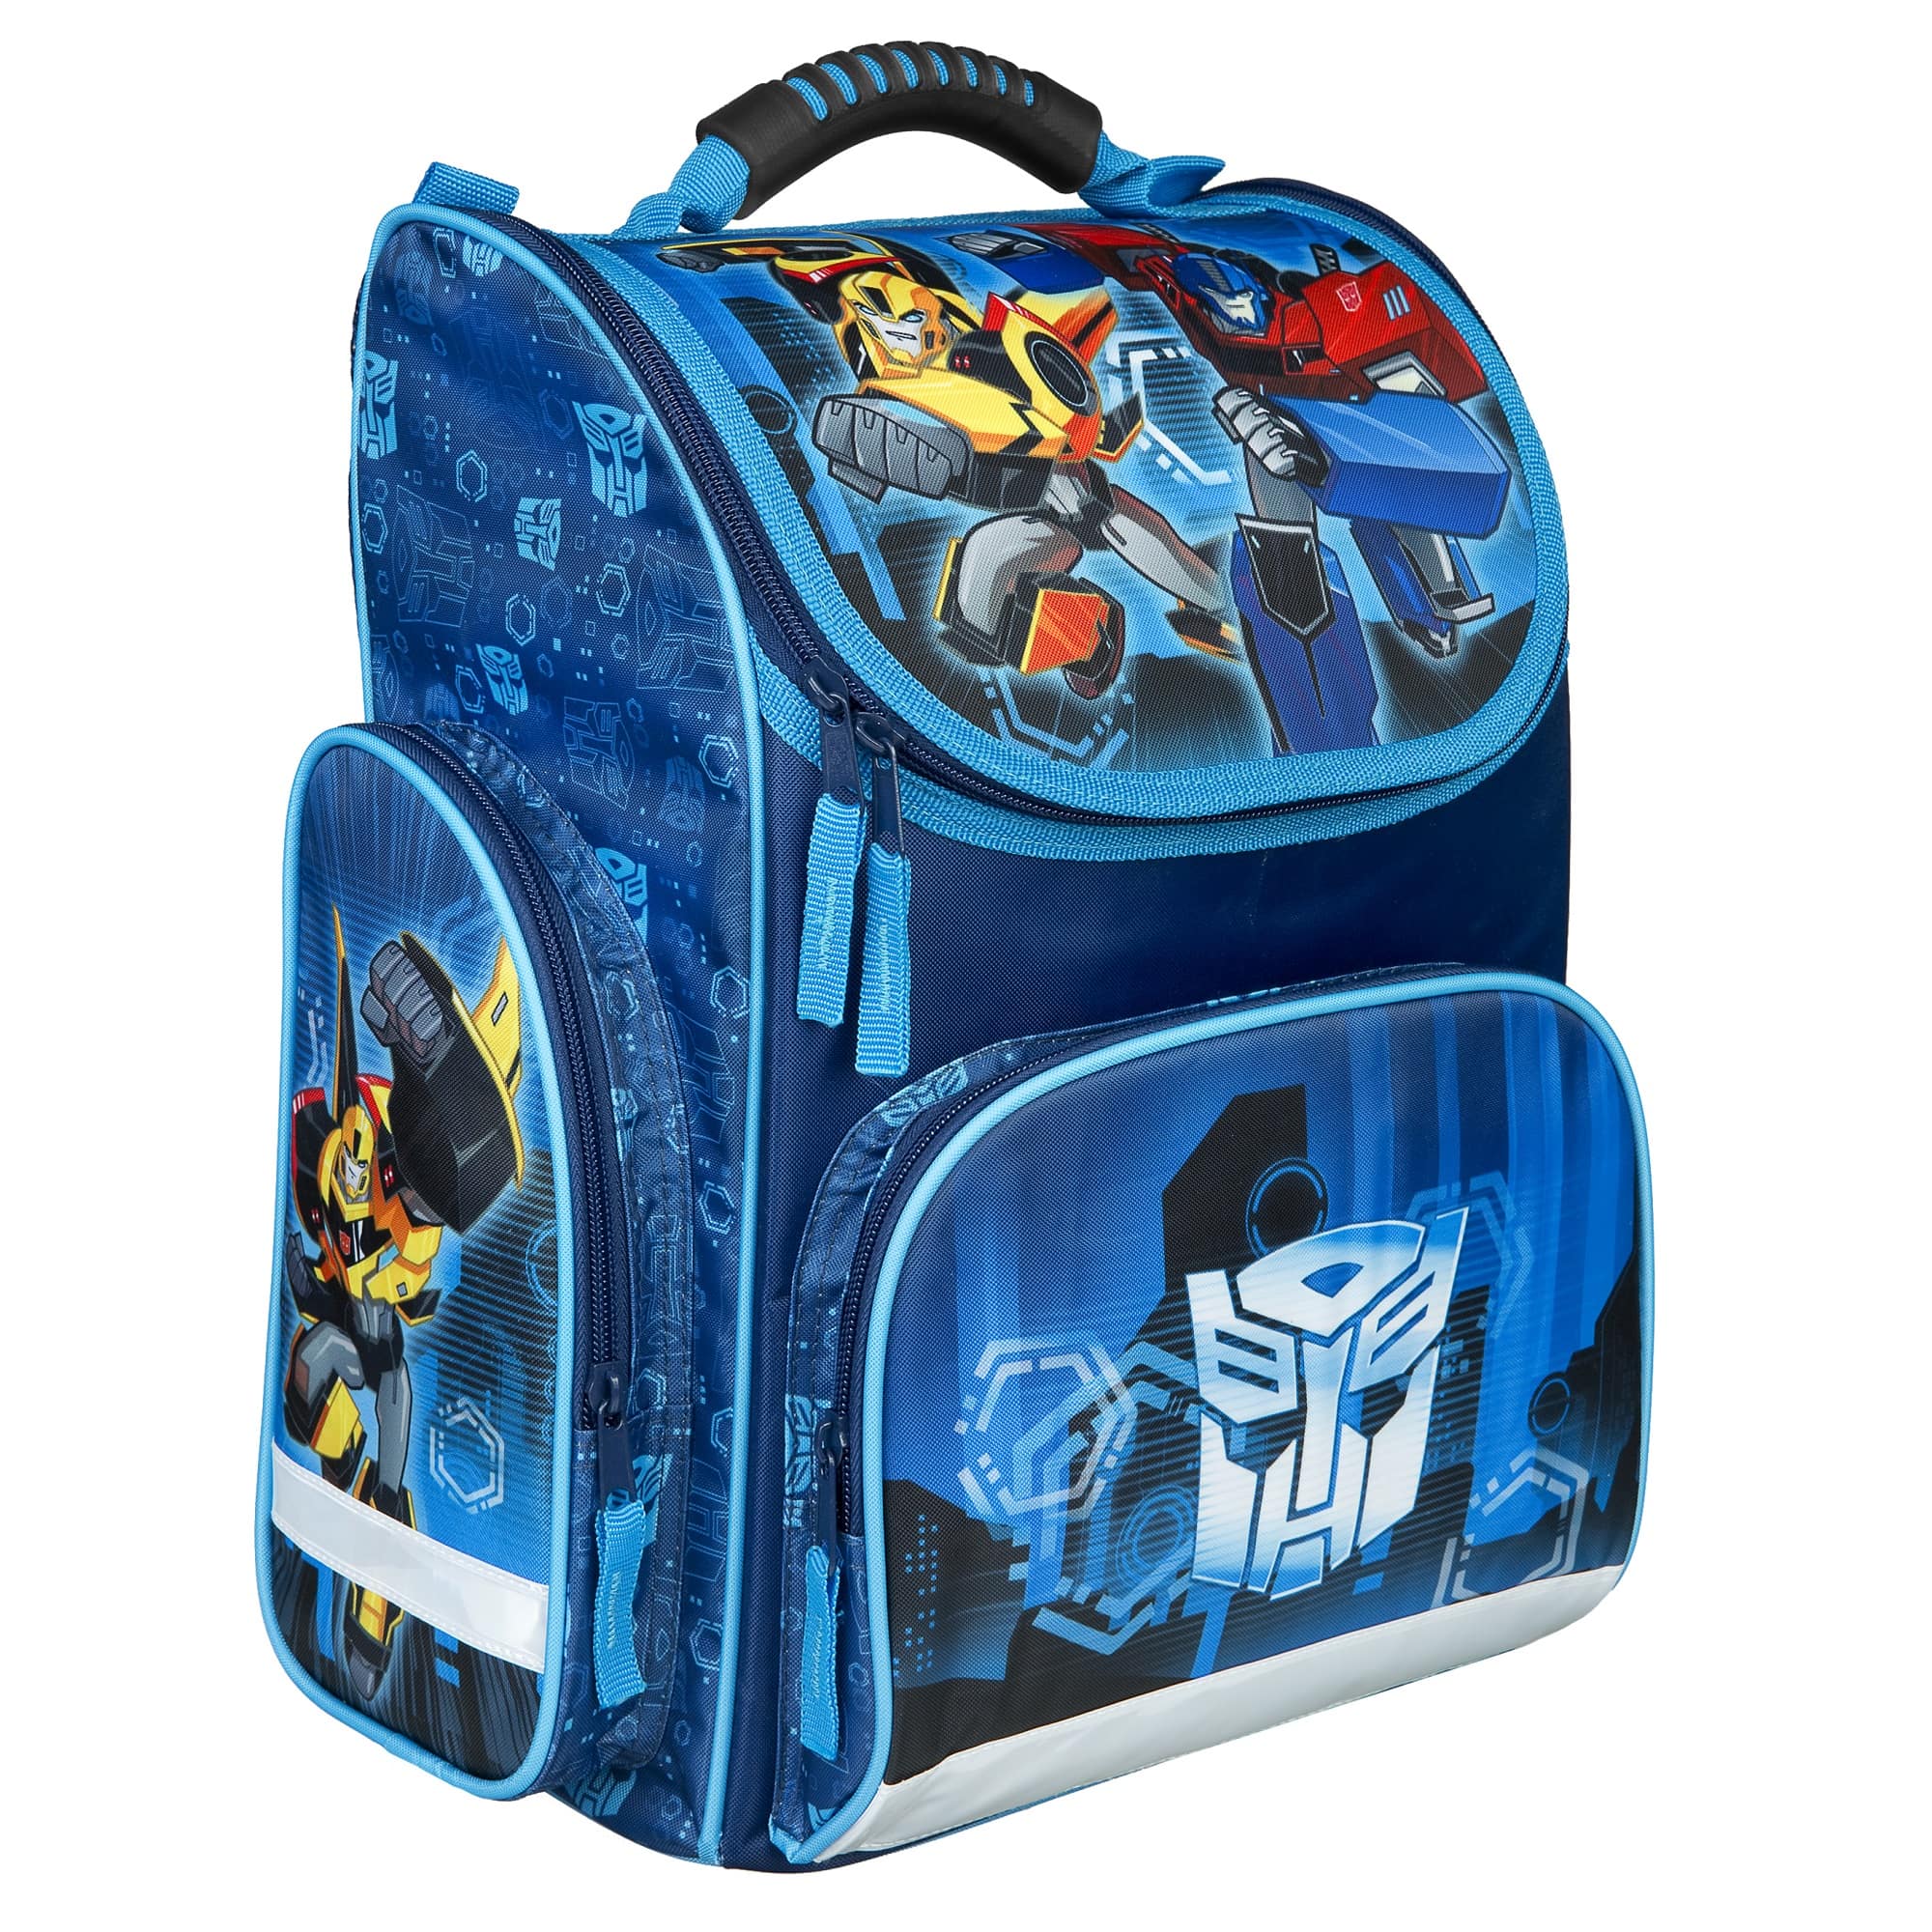 Transformers Schulranzen für Jungen in Blau Ansicht Seite rechts mit Reißverschlussfach